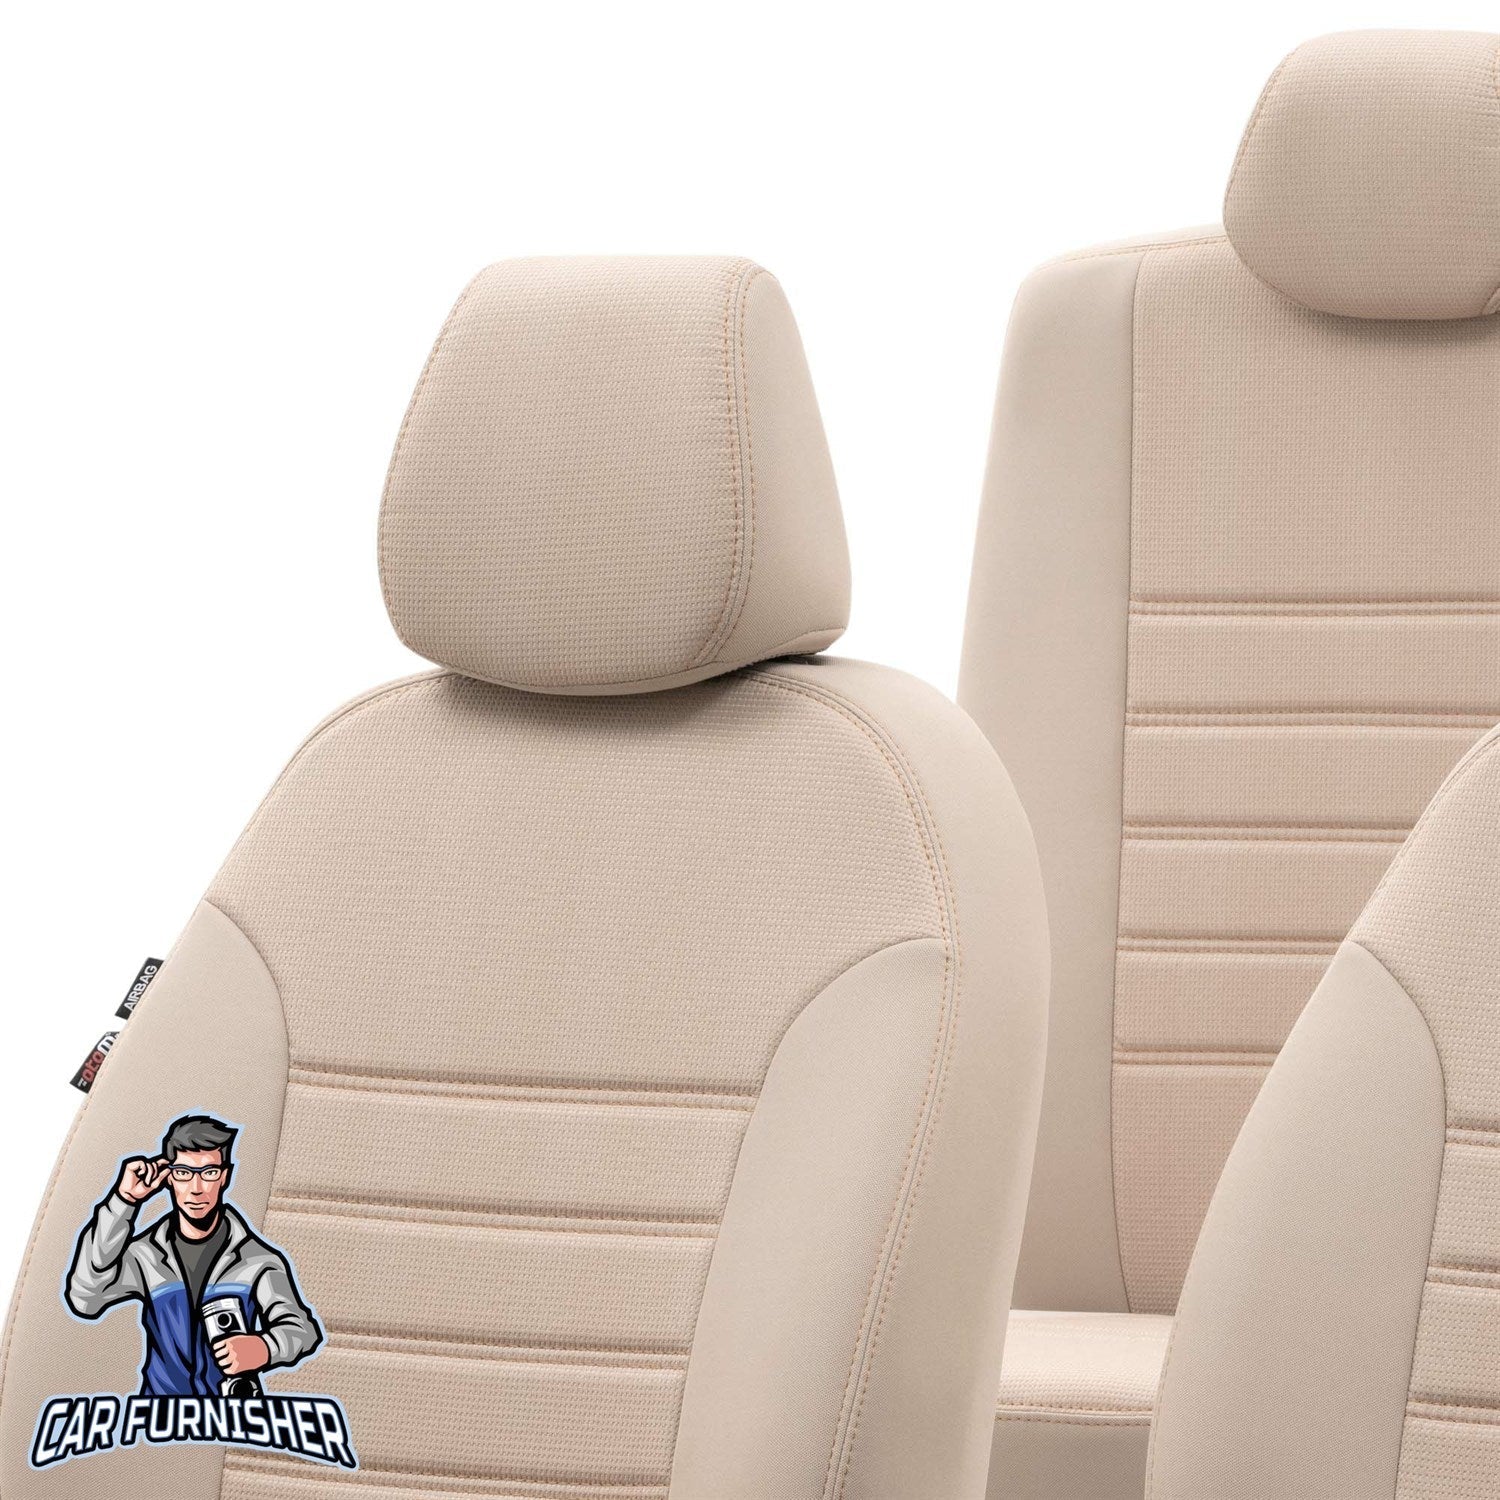 Ford Fiesta Seat Covers Original Jacquard Design Beige Jacquard Fabric